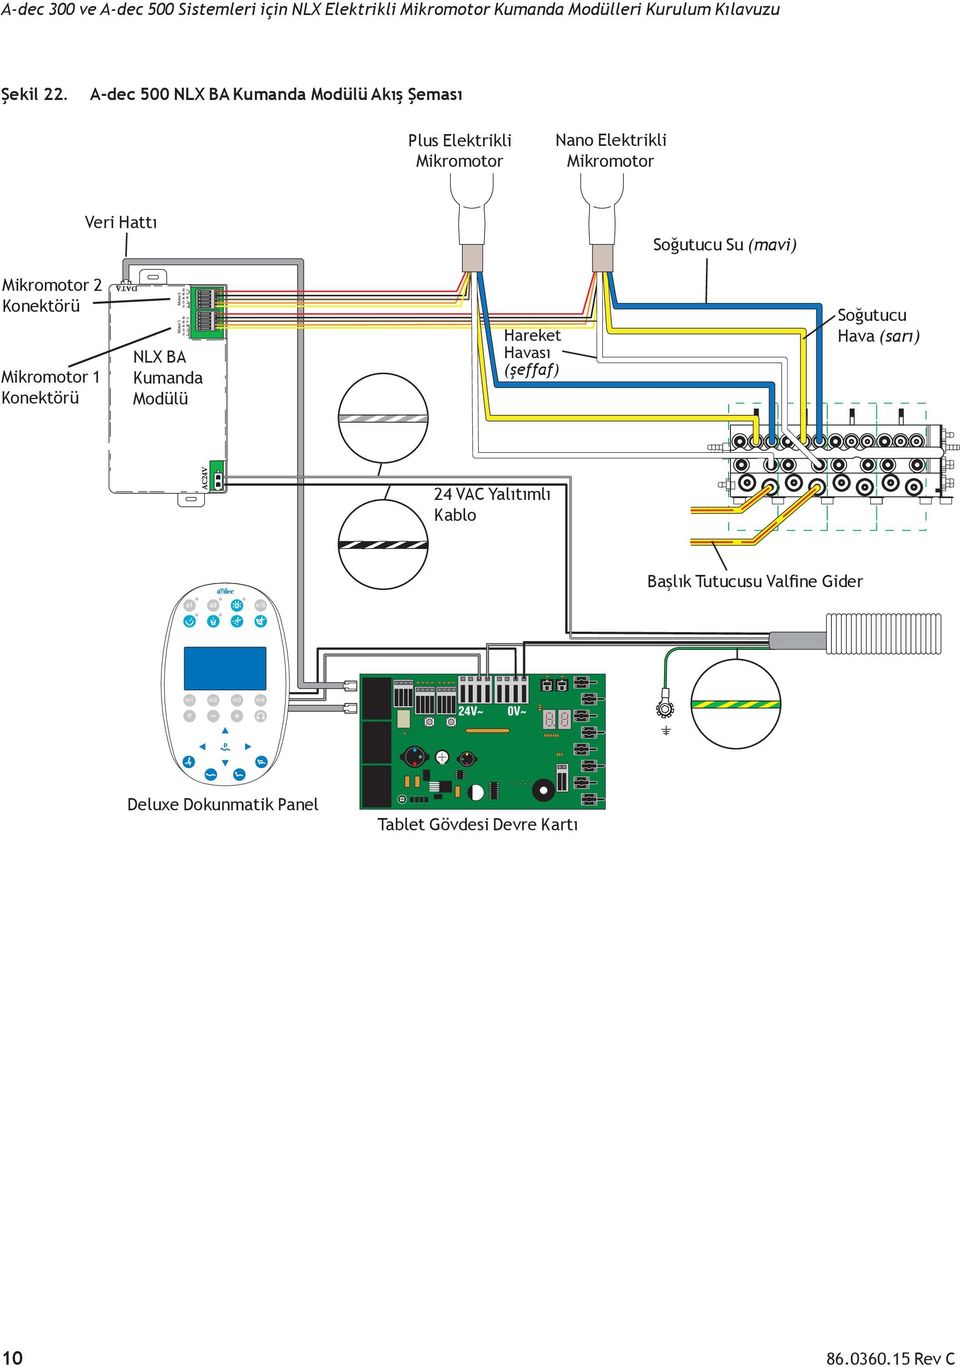 Veri Hattı Soğutucu Su (mavi) Mikromotor 2 Konektörü Mikromotor 1 Konektörü NLX BA Kumanda Modülü Ye